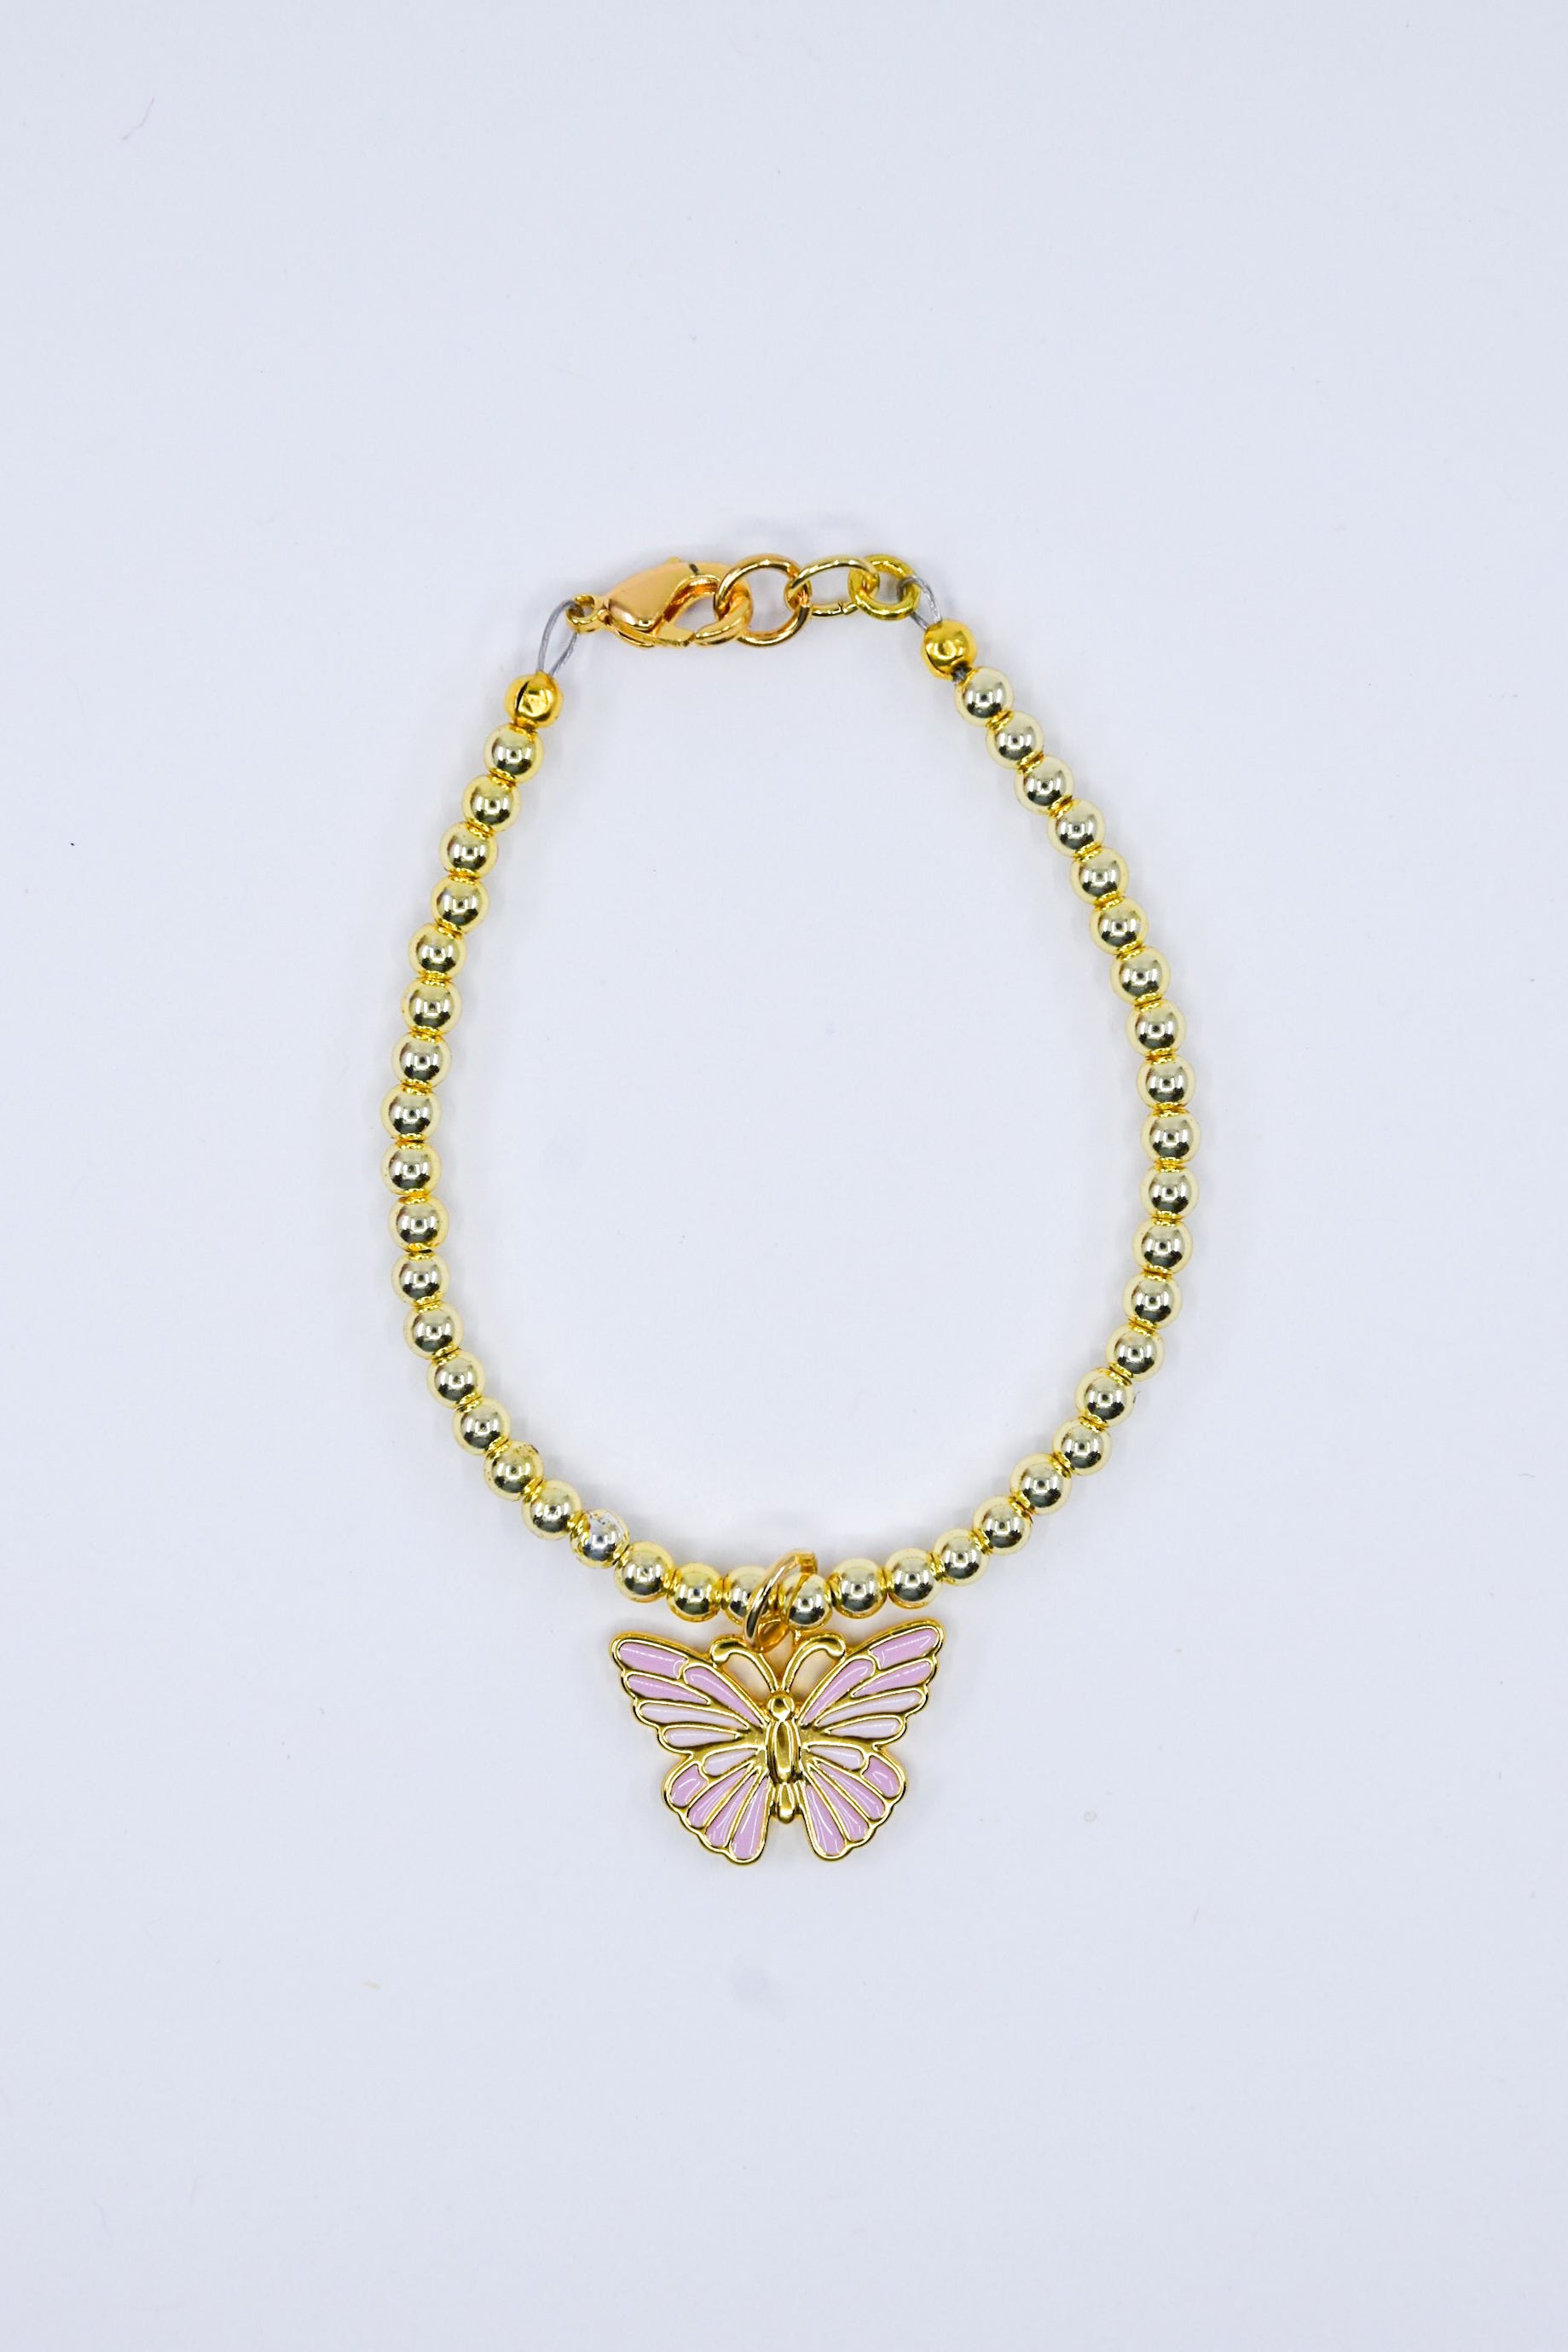 Hollands Butterfly Charm Bracelet